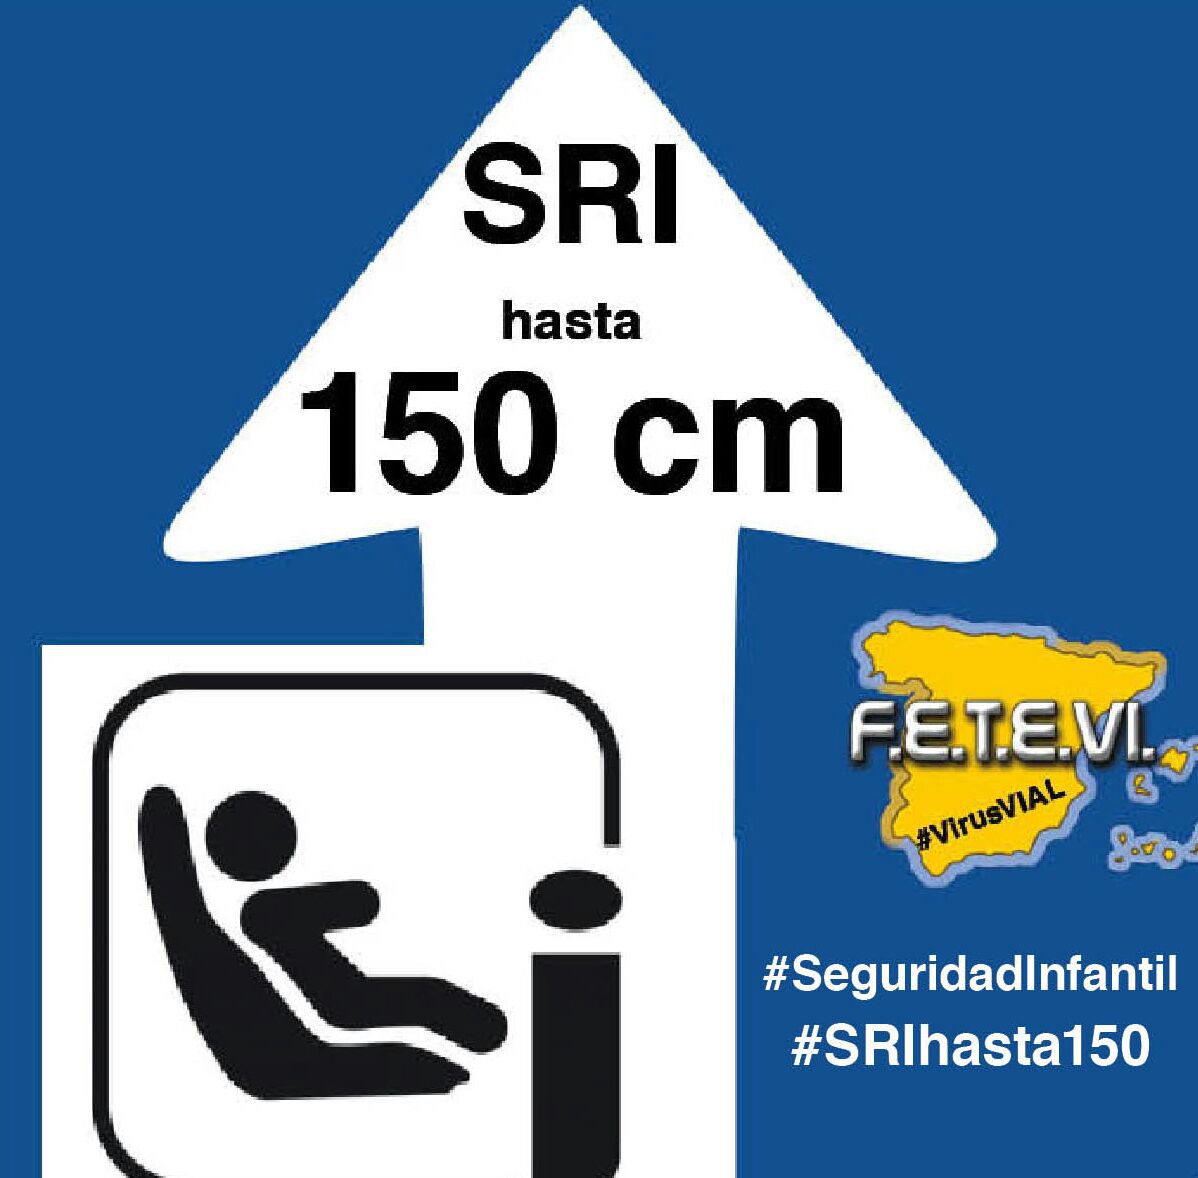 #SRIhasta150 #SeguridadInfantil